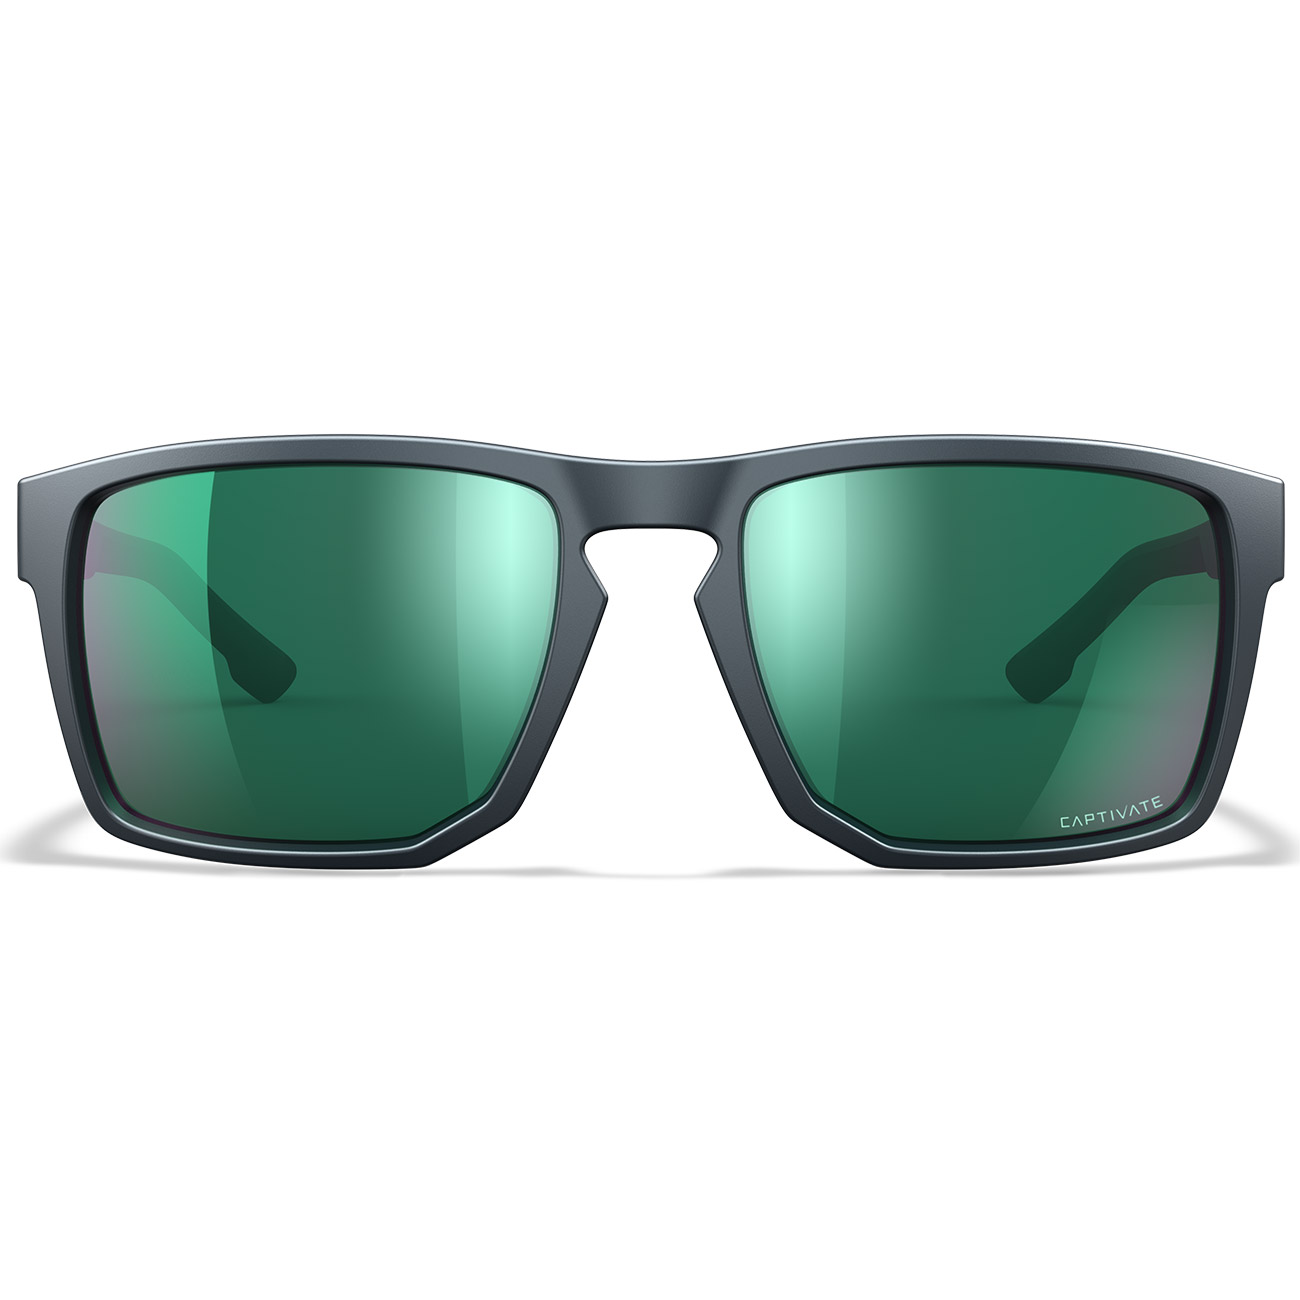 Wiley X Sonnenbrille Founder Captivate matt grau Glser grn verspiegelt und polarisiert inkl. Seitenschutz Bild 1